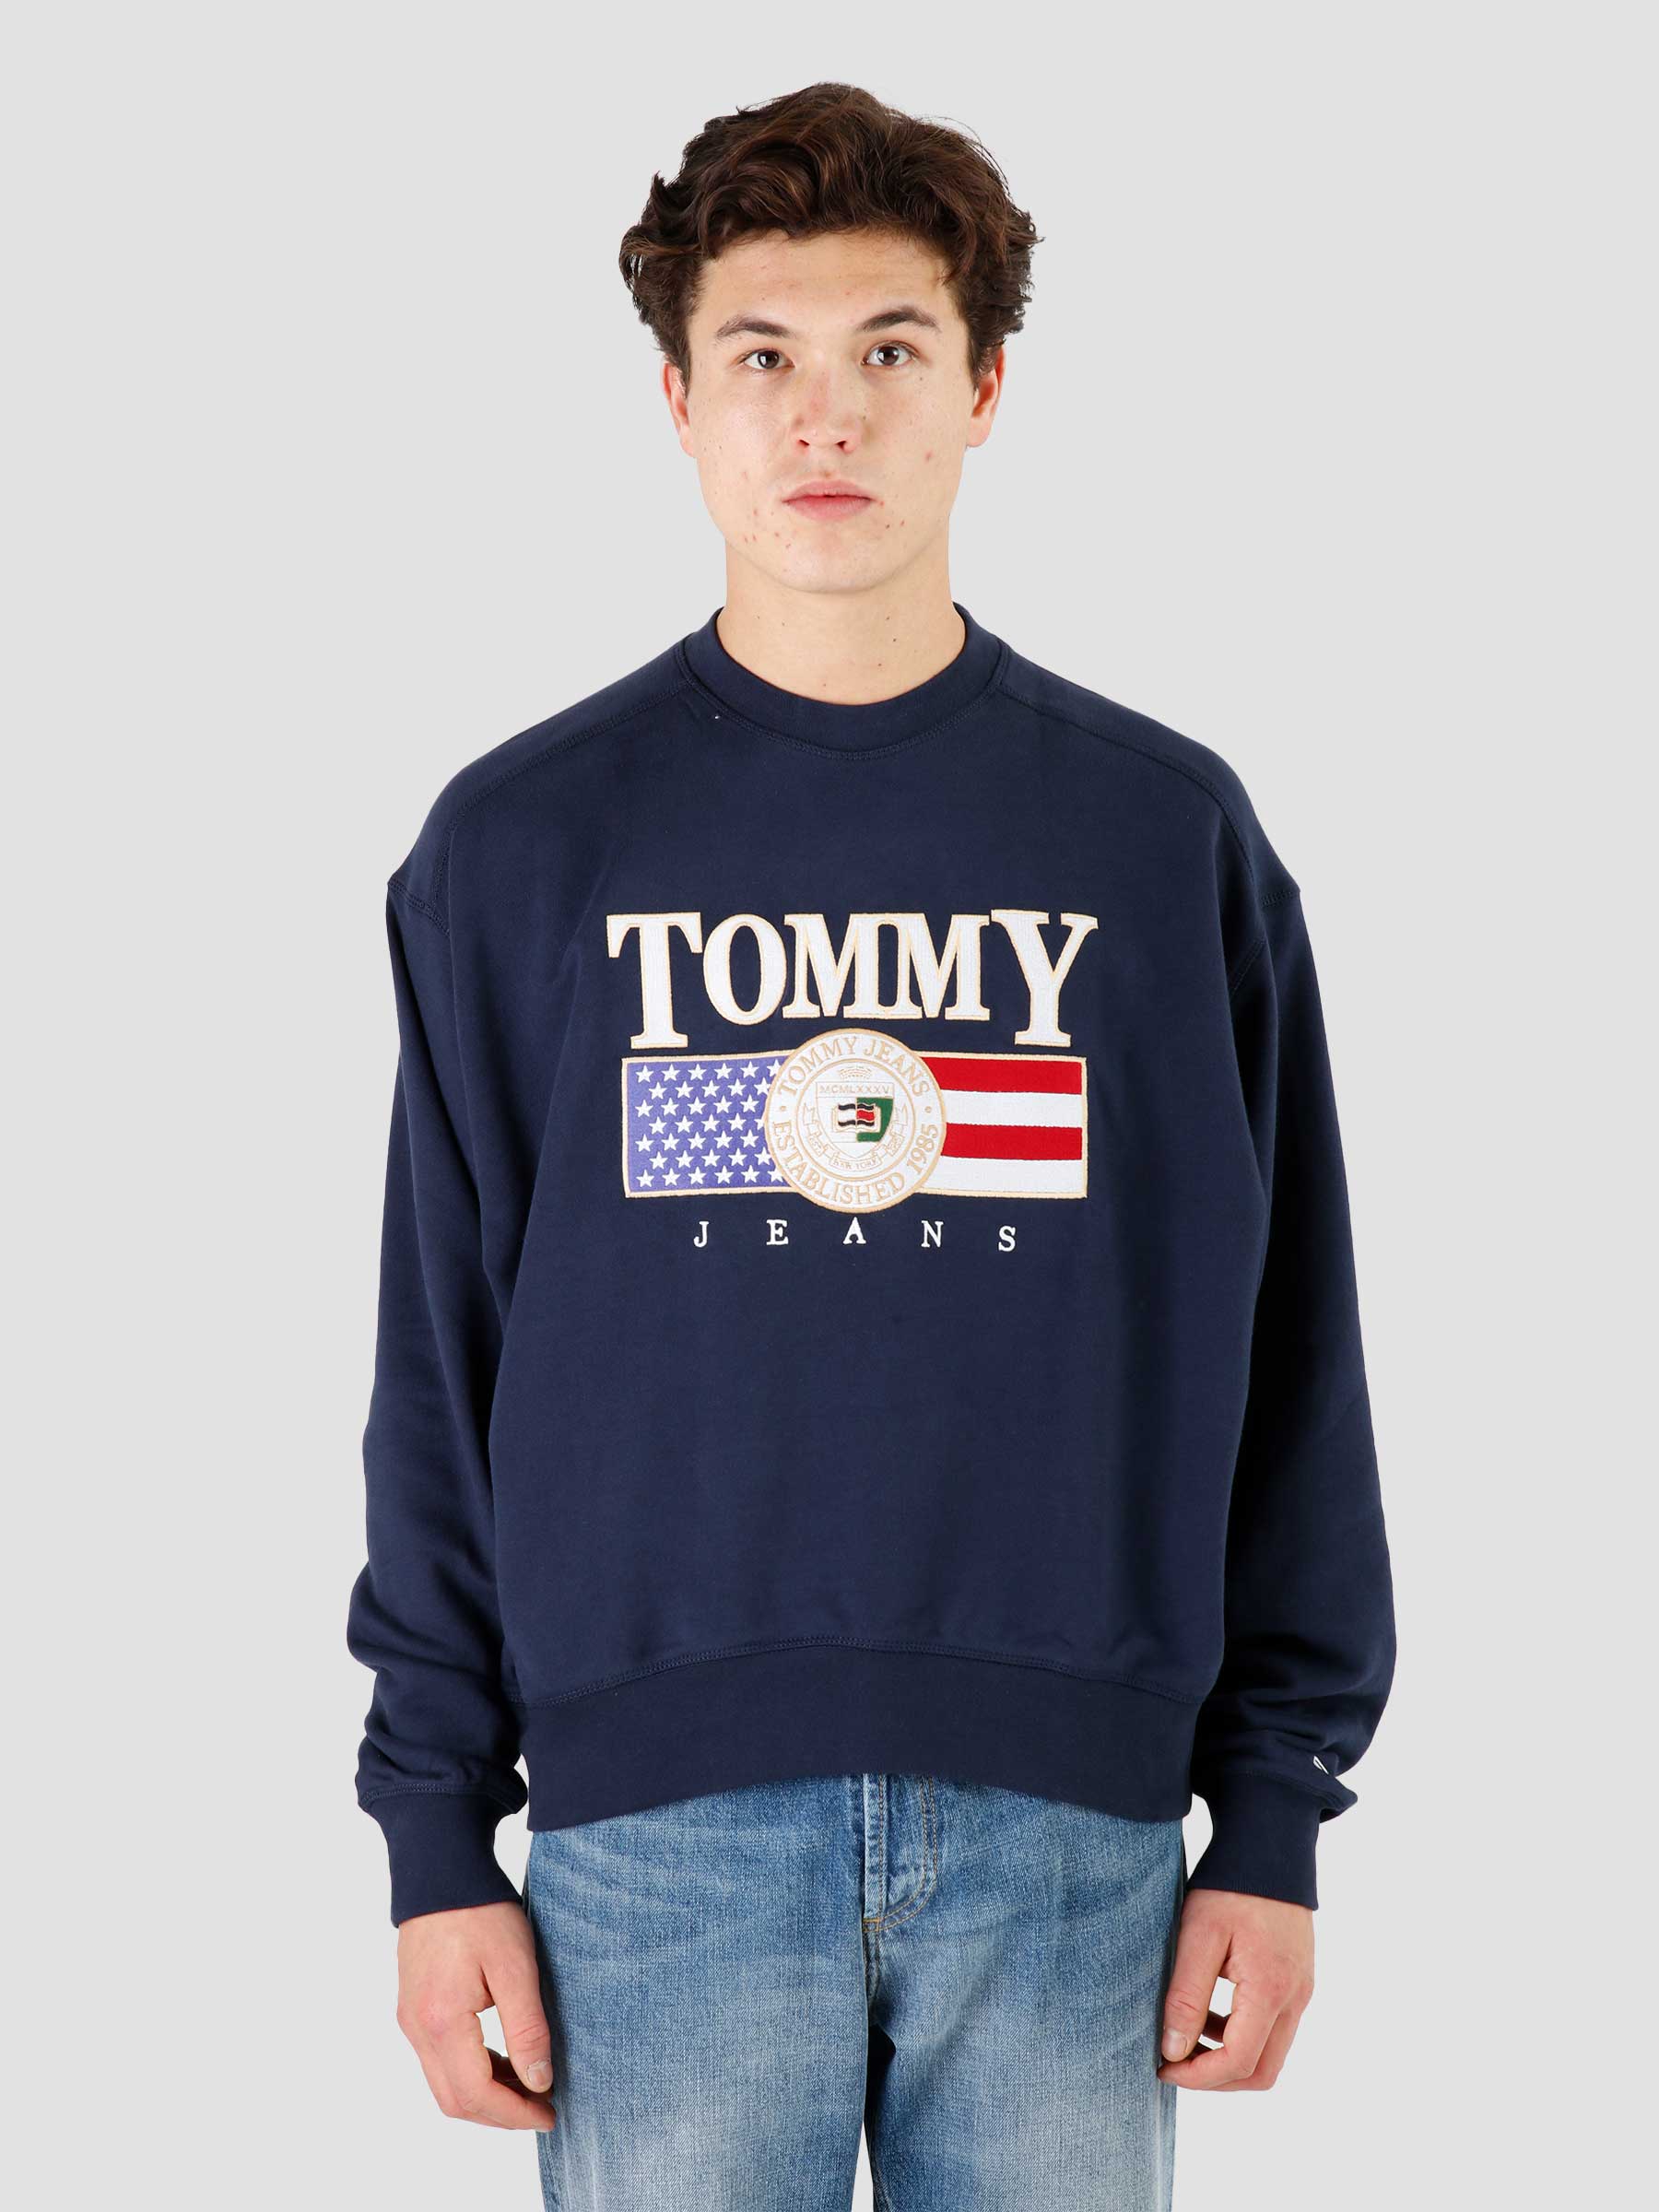 Tommy Jeans Freshcotton Navy Crewneck Twilight Boxy Luxe TJM TJ 